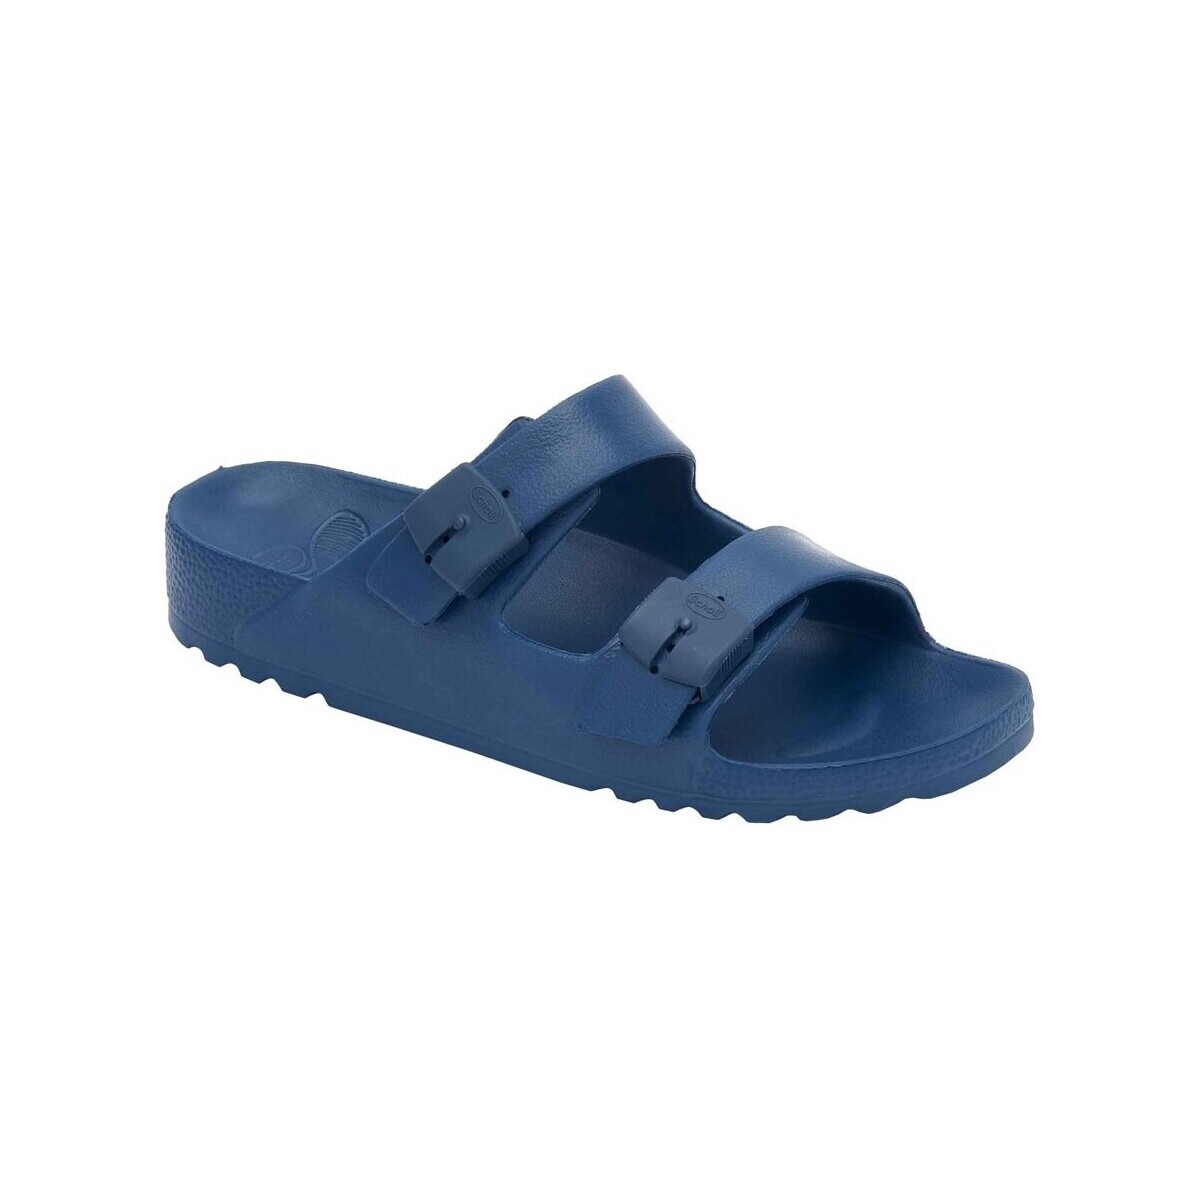 Pantofi Femei Sandale Scholl SANDALE  BAHIA albastru